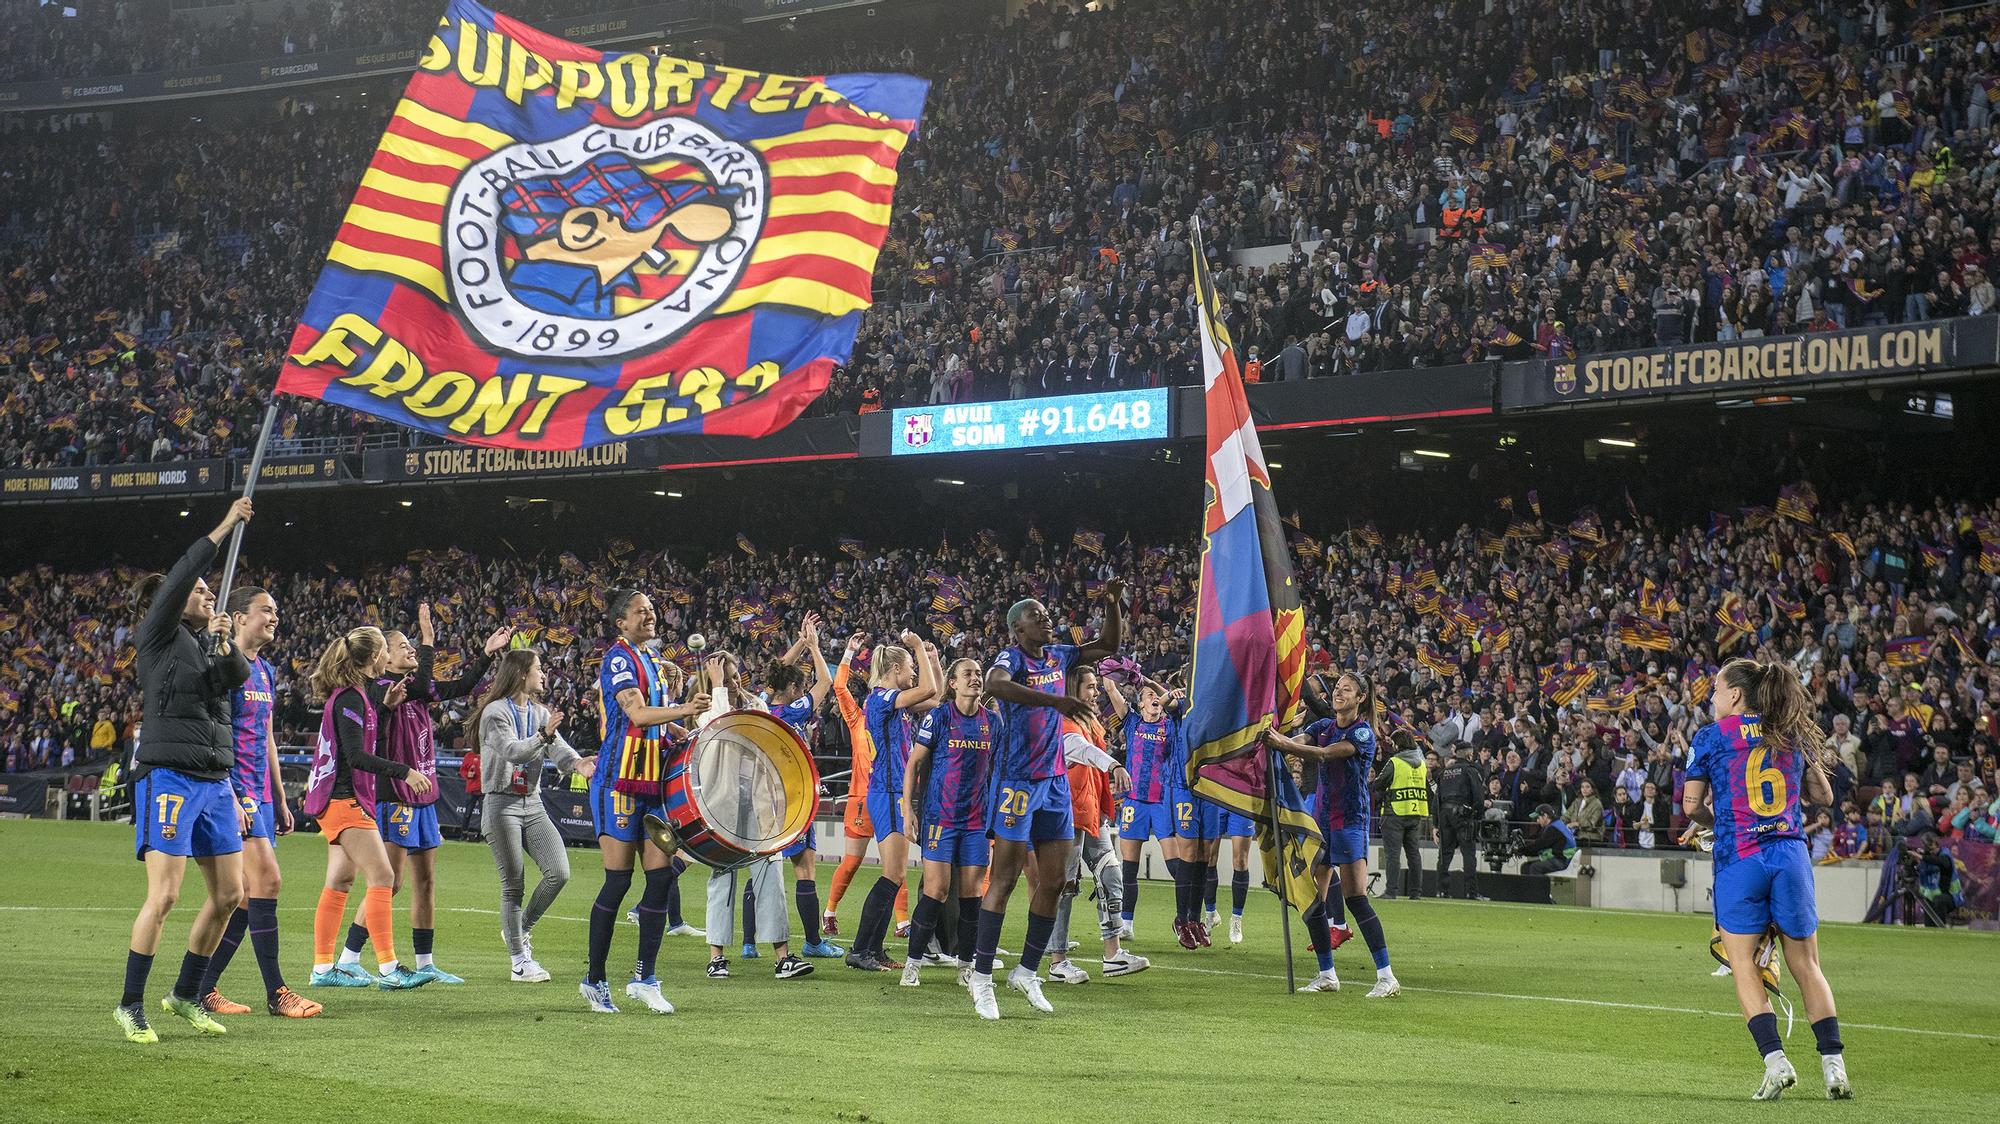 Las jugadoras celebrando su triunfo por 5 goles a 1 ante el Wolsburgo y el nuevo récord mundial de asistencia con 91.648 espectadores en el Camp Nou.